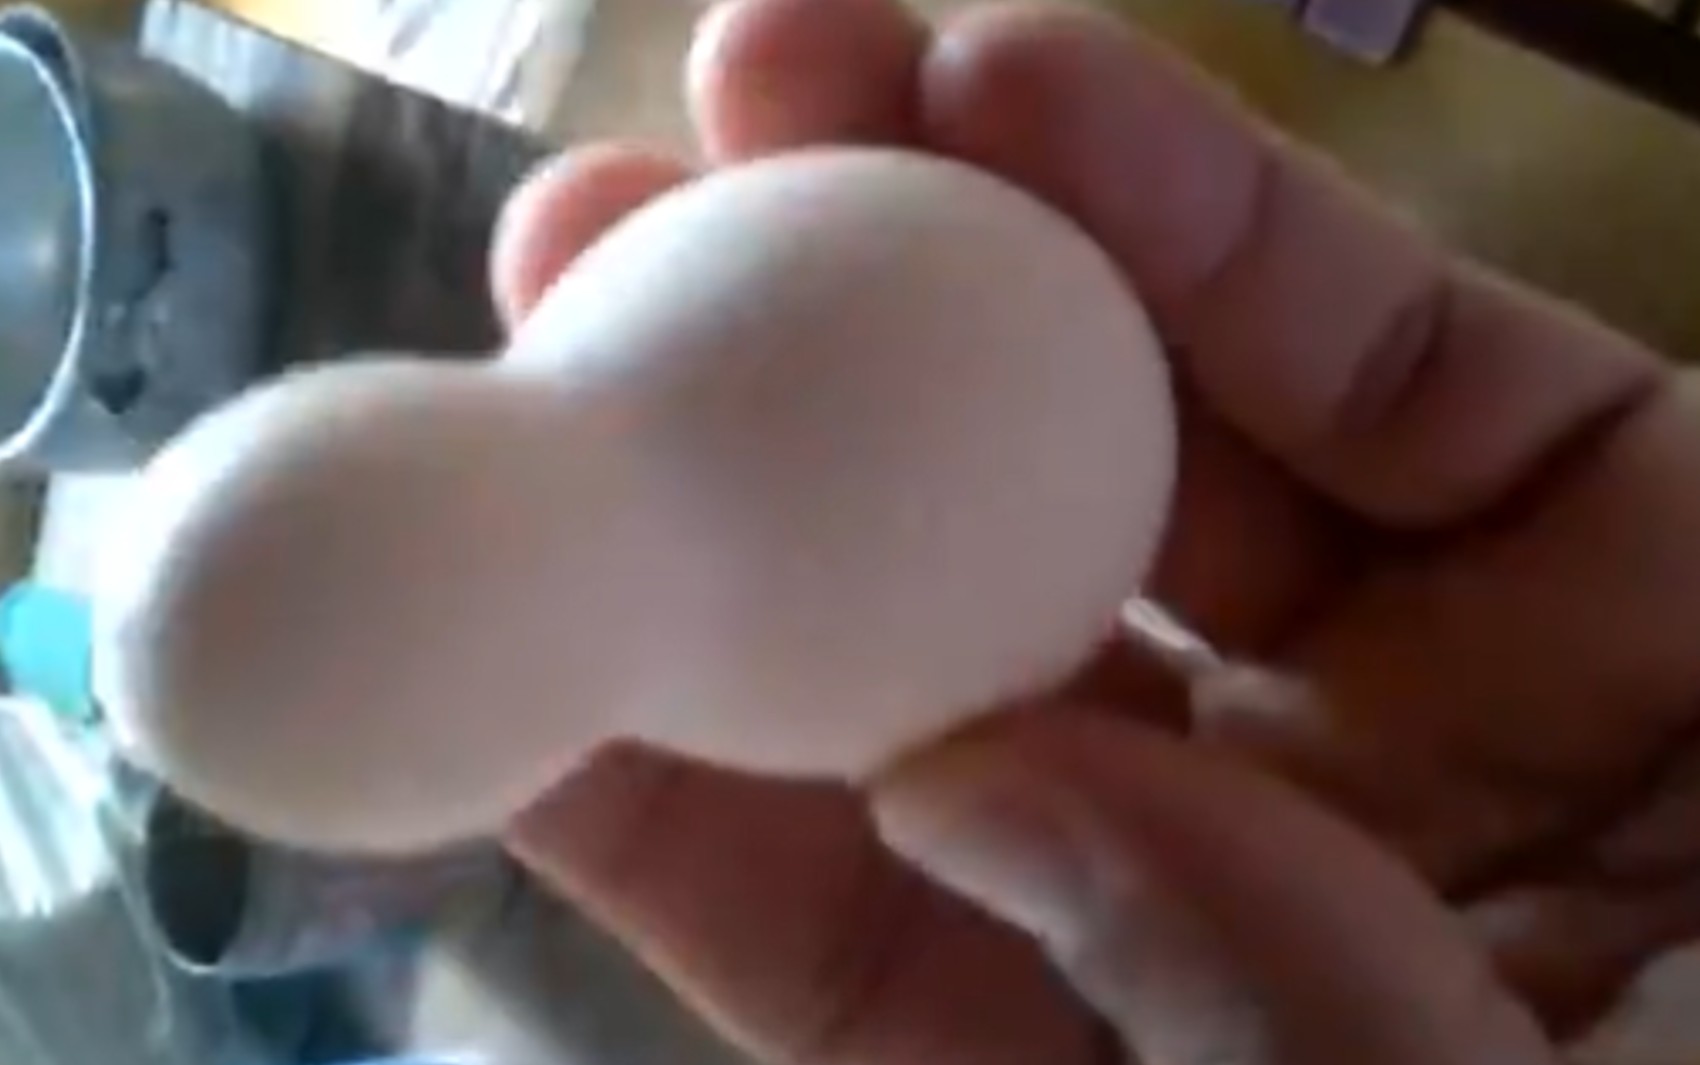 Agente de saúde se impressiona ao encontrar ovo em formato de pino de boliche; vídeo